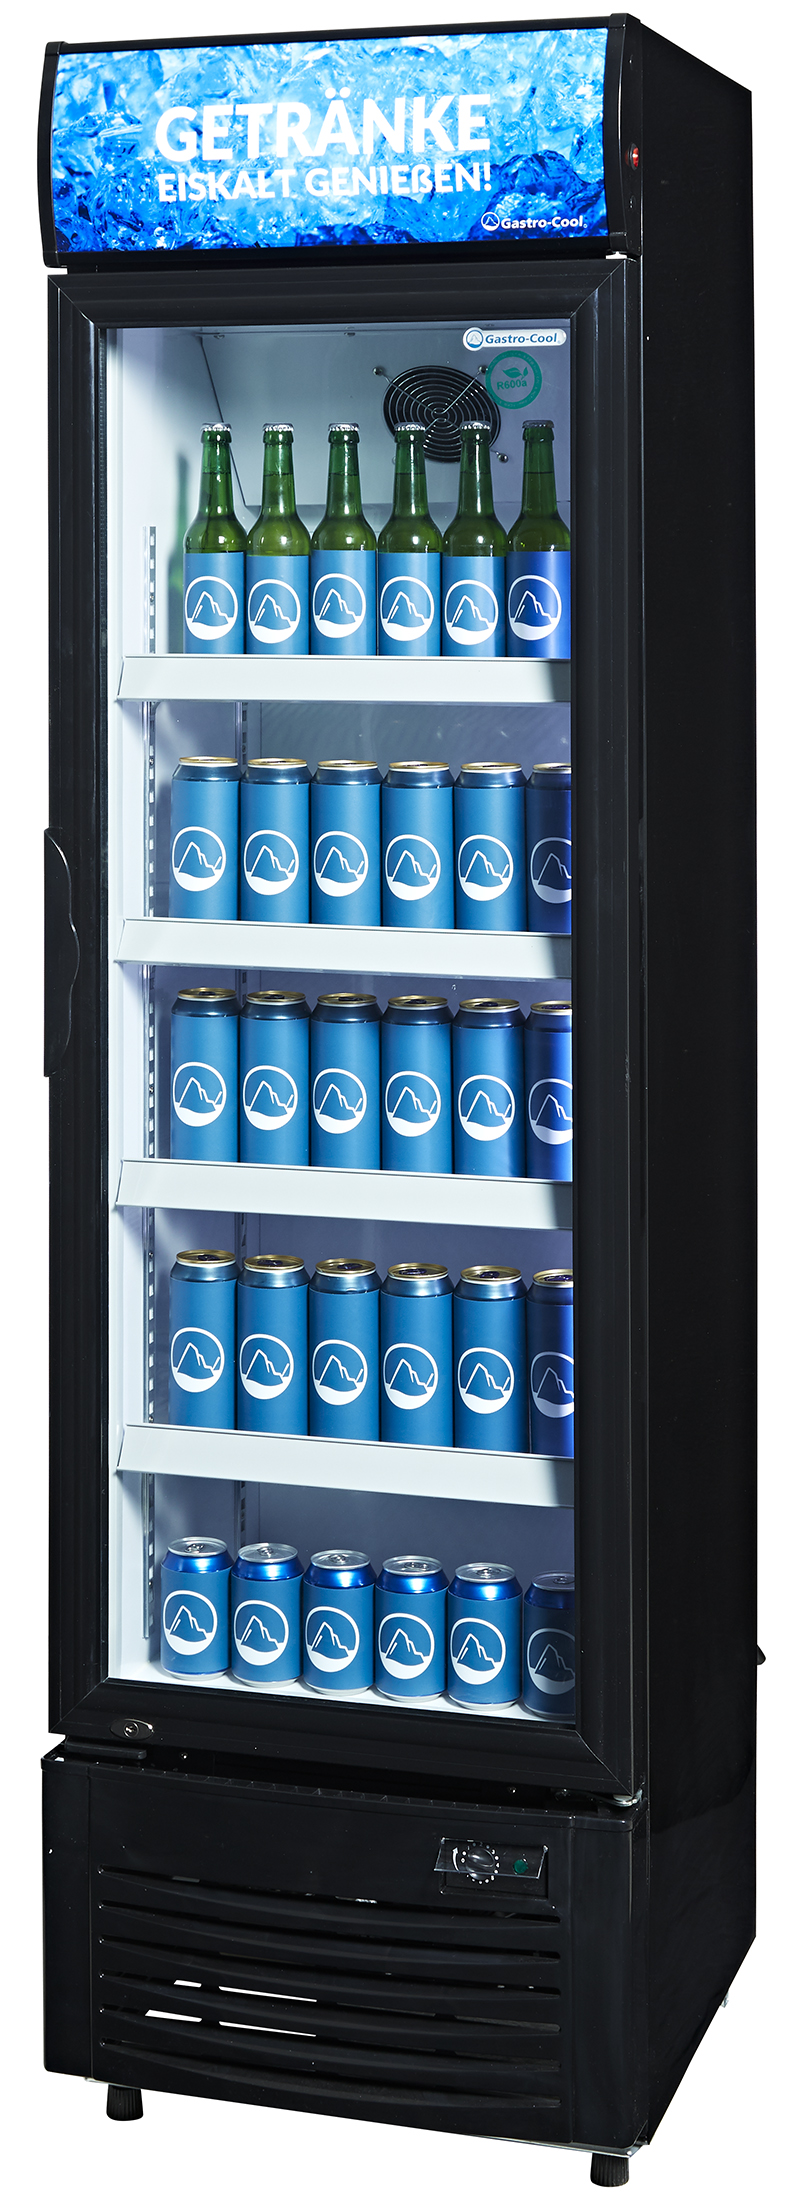 Gastro-Cool - Getränkekühlschrank mit Werbedisplay - DC280 - seitlich gefüllt